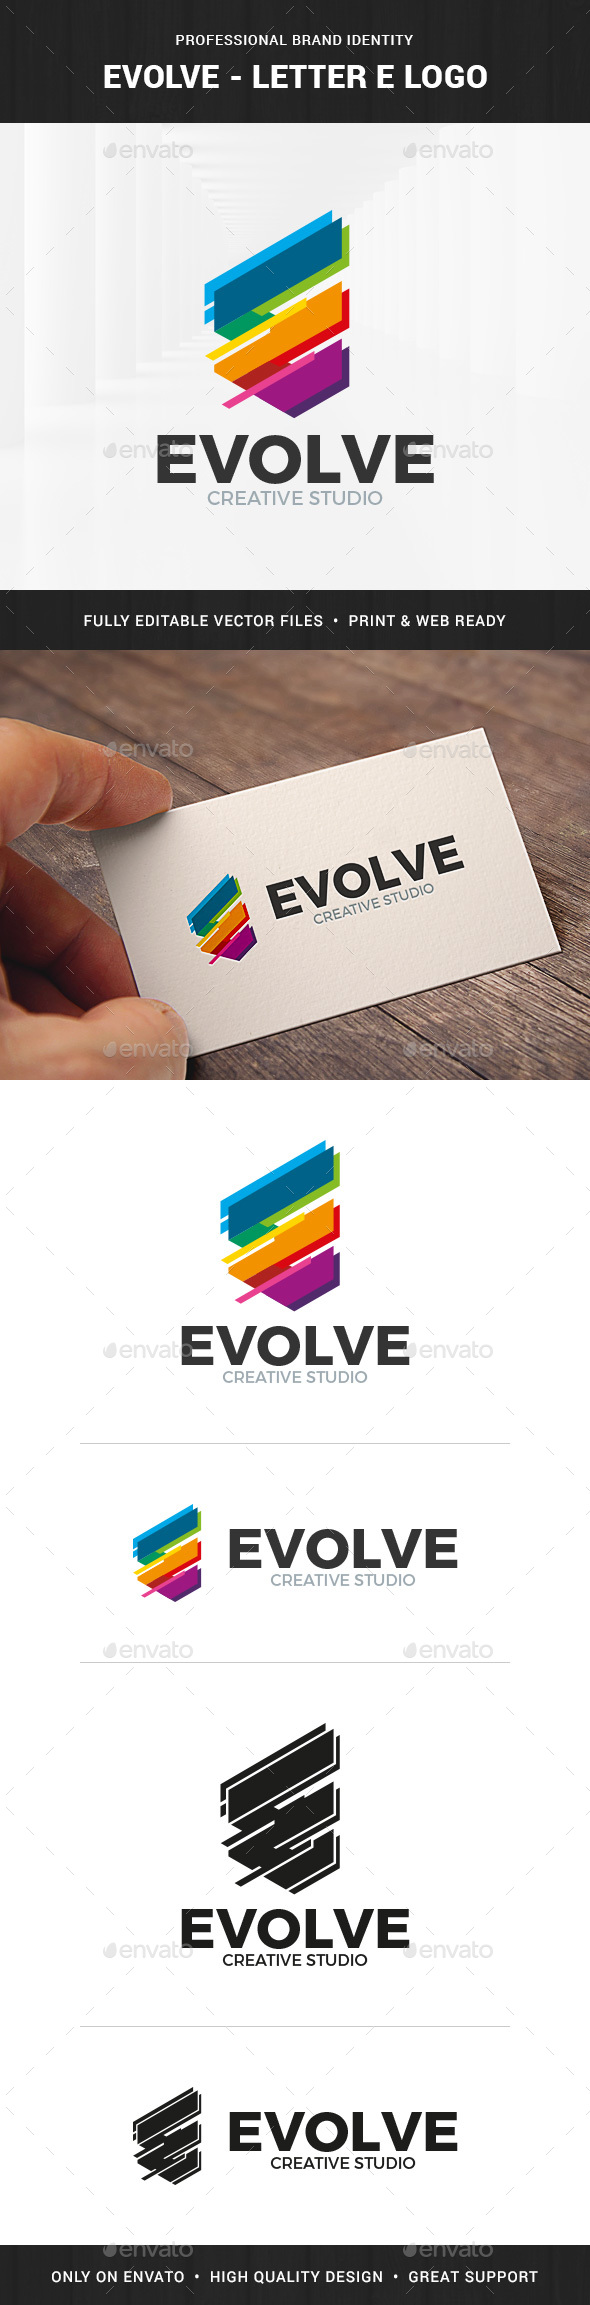 Evolve - Letter E Logo